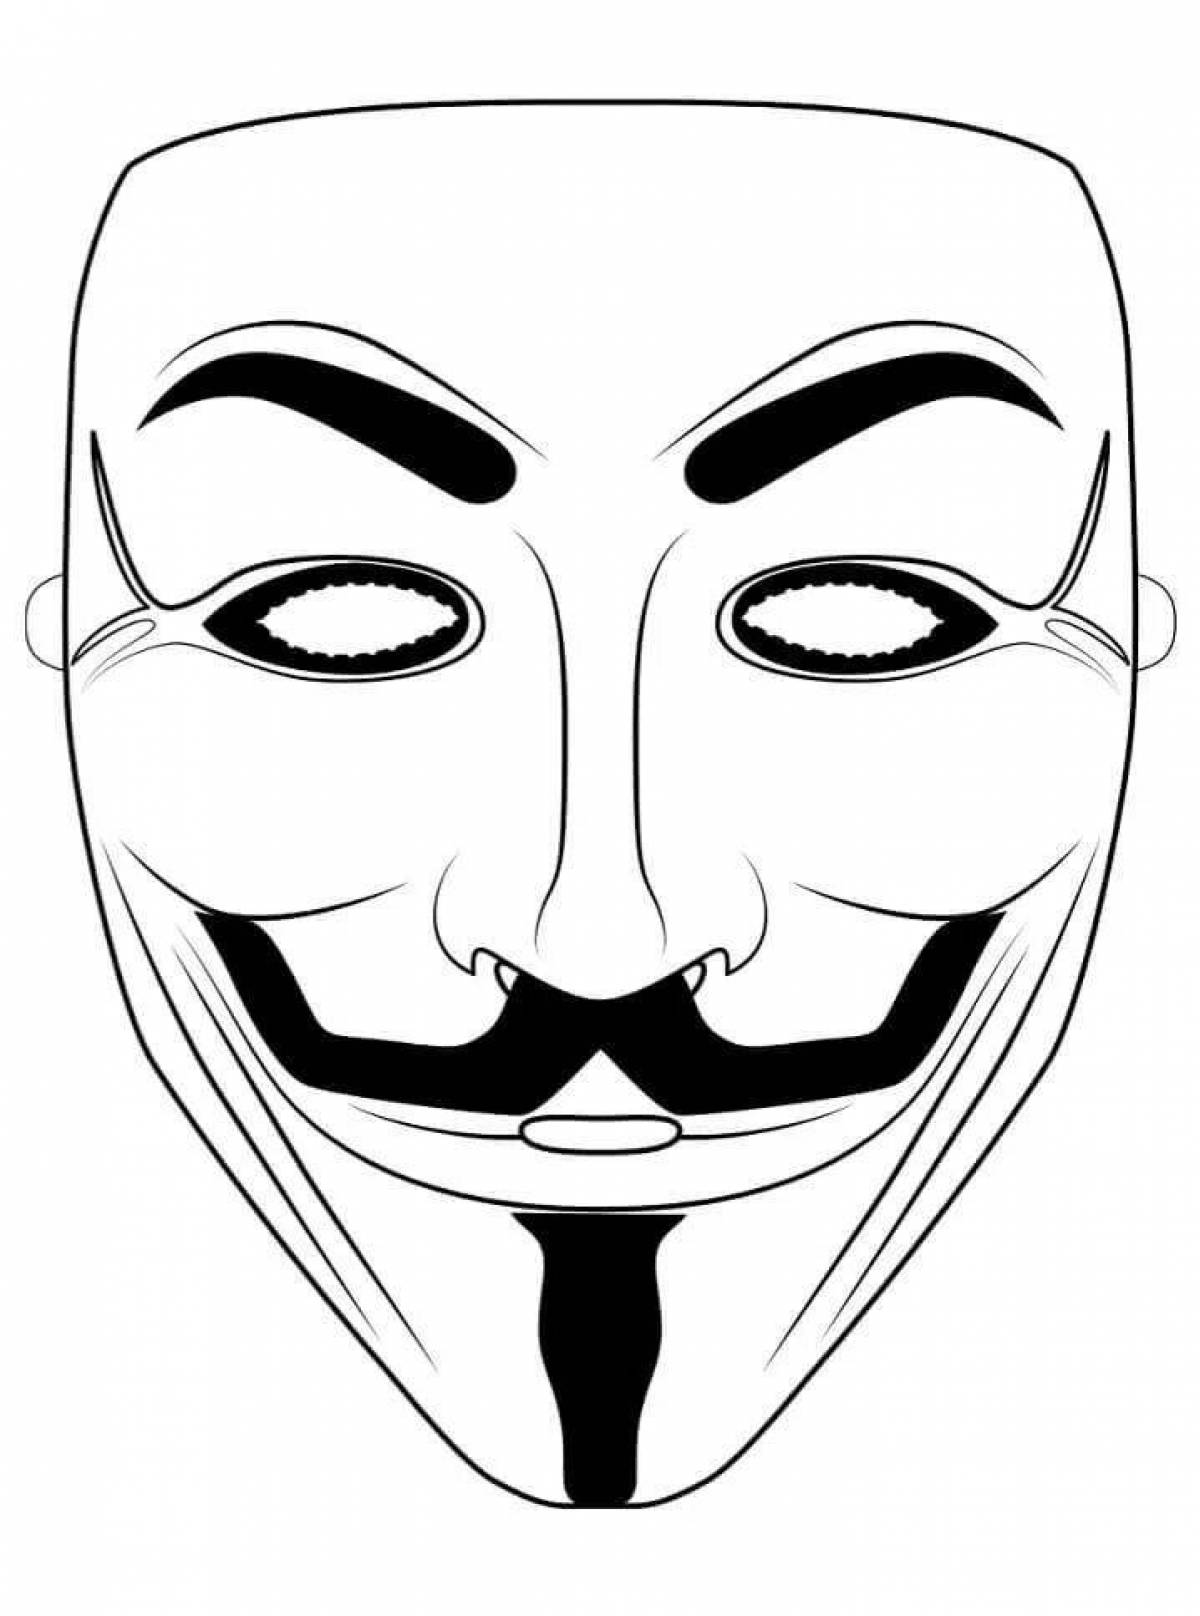 Стильная идея раскраски анонимной маски